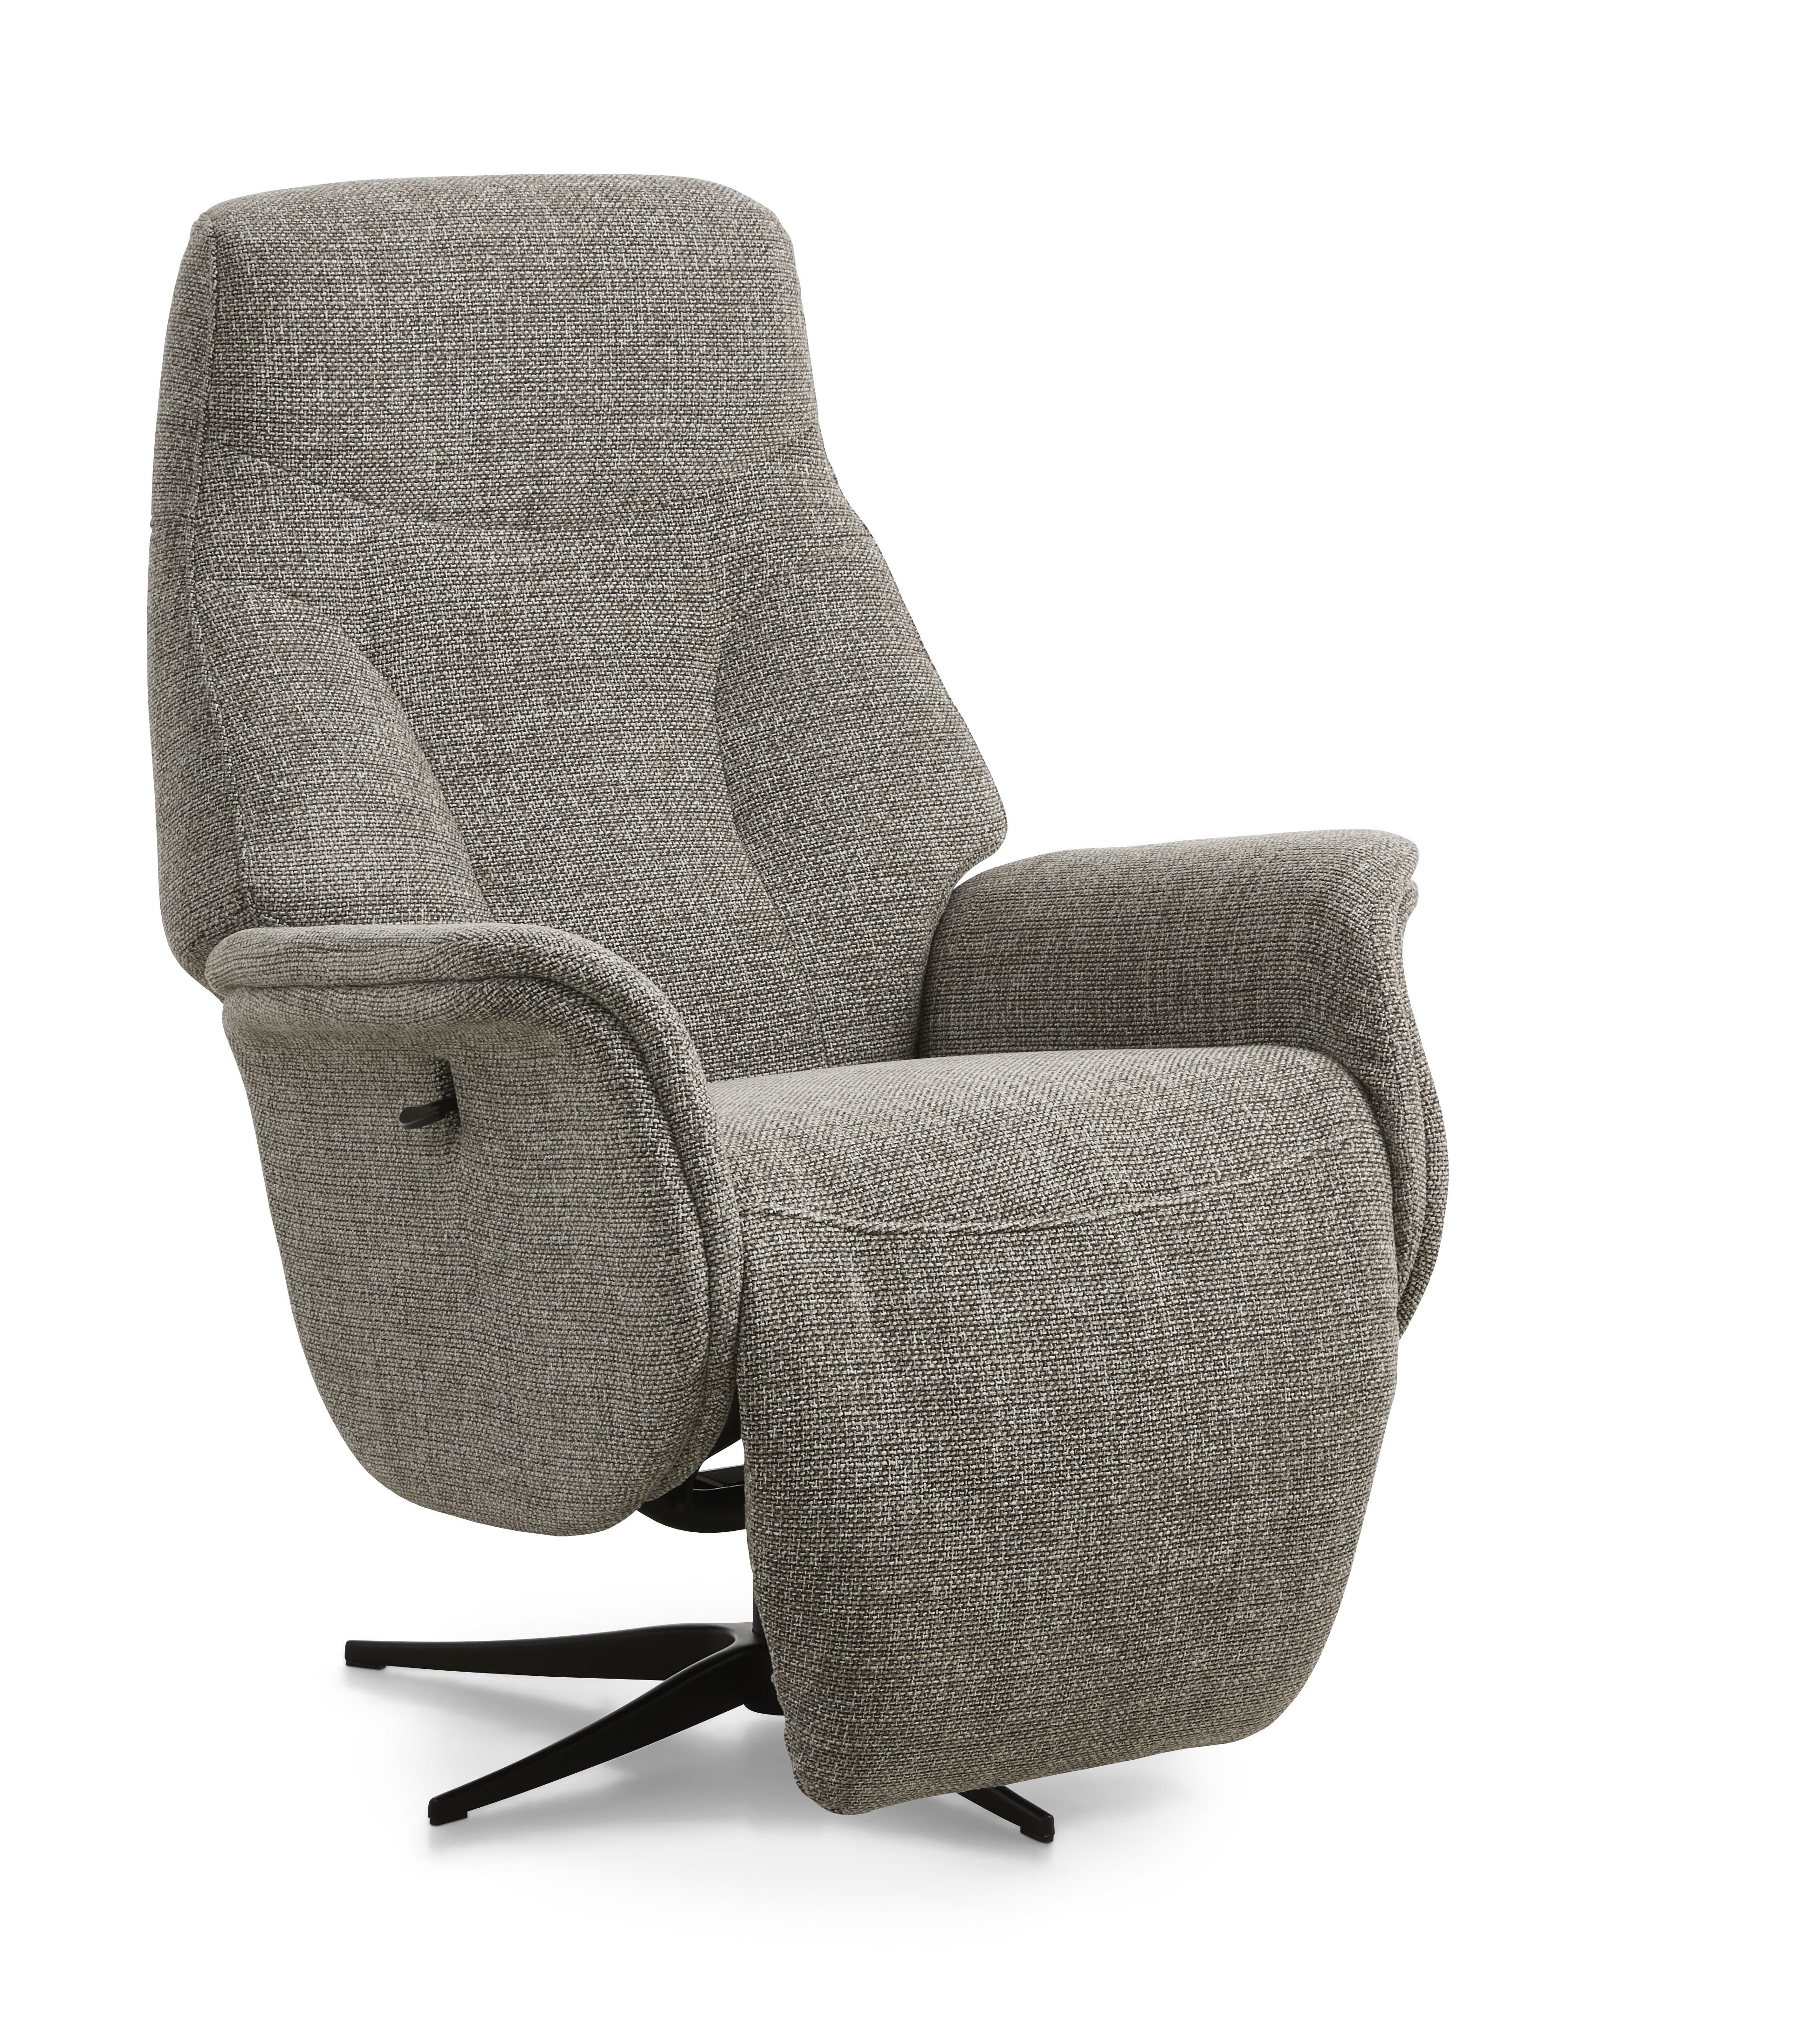 Storm recliner stol, manuel, m. armlæn, vippefunktion, fodskammel - taupe polyester stof/sort metal